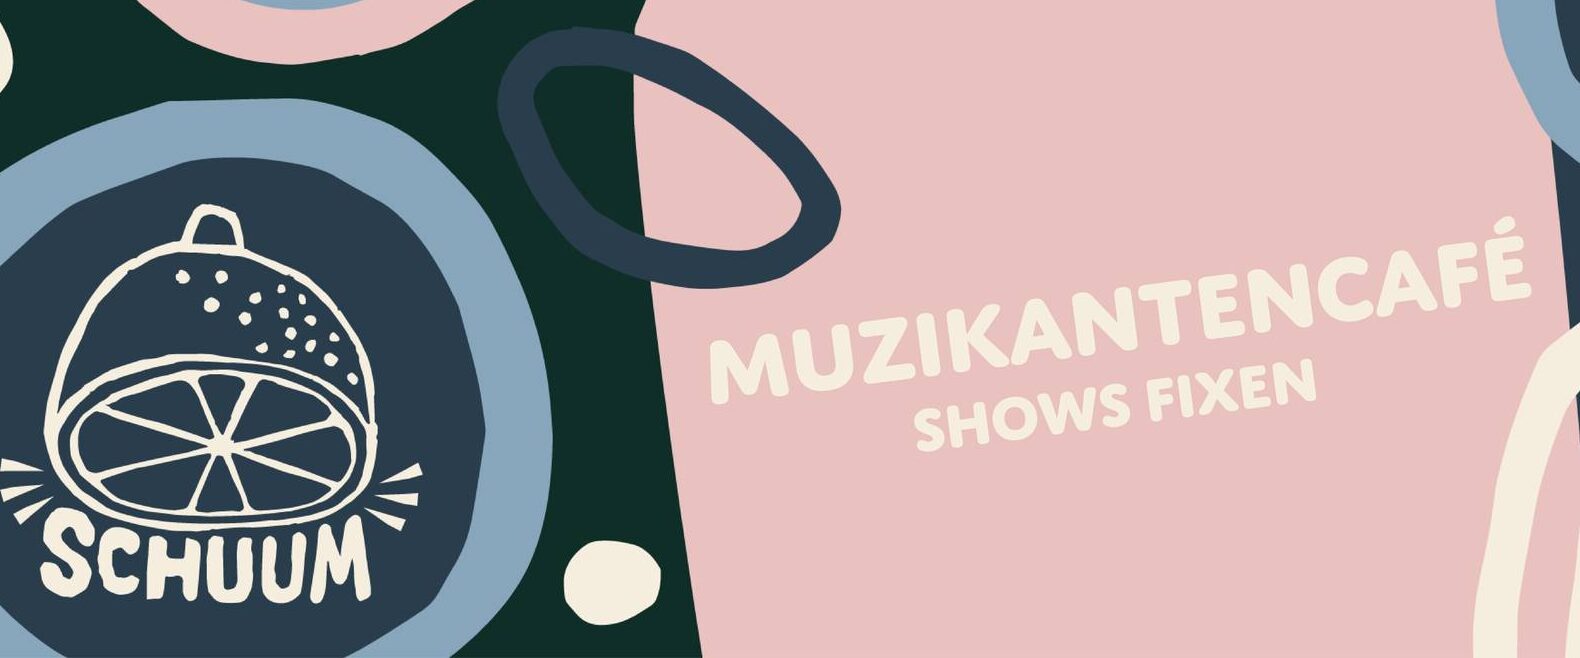 Muzikantencafé | Shows fixen 2